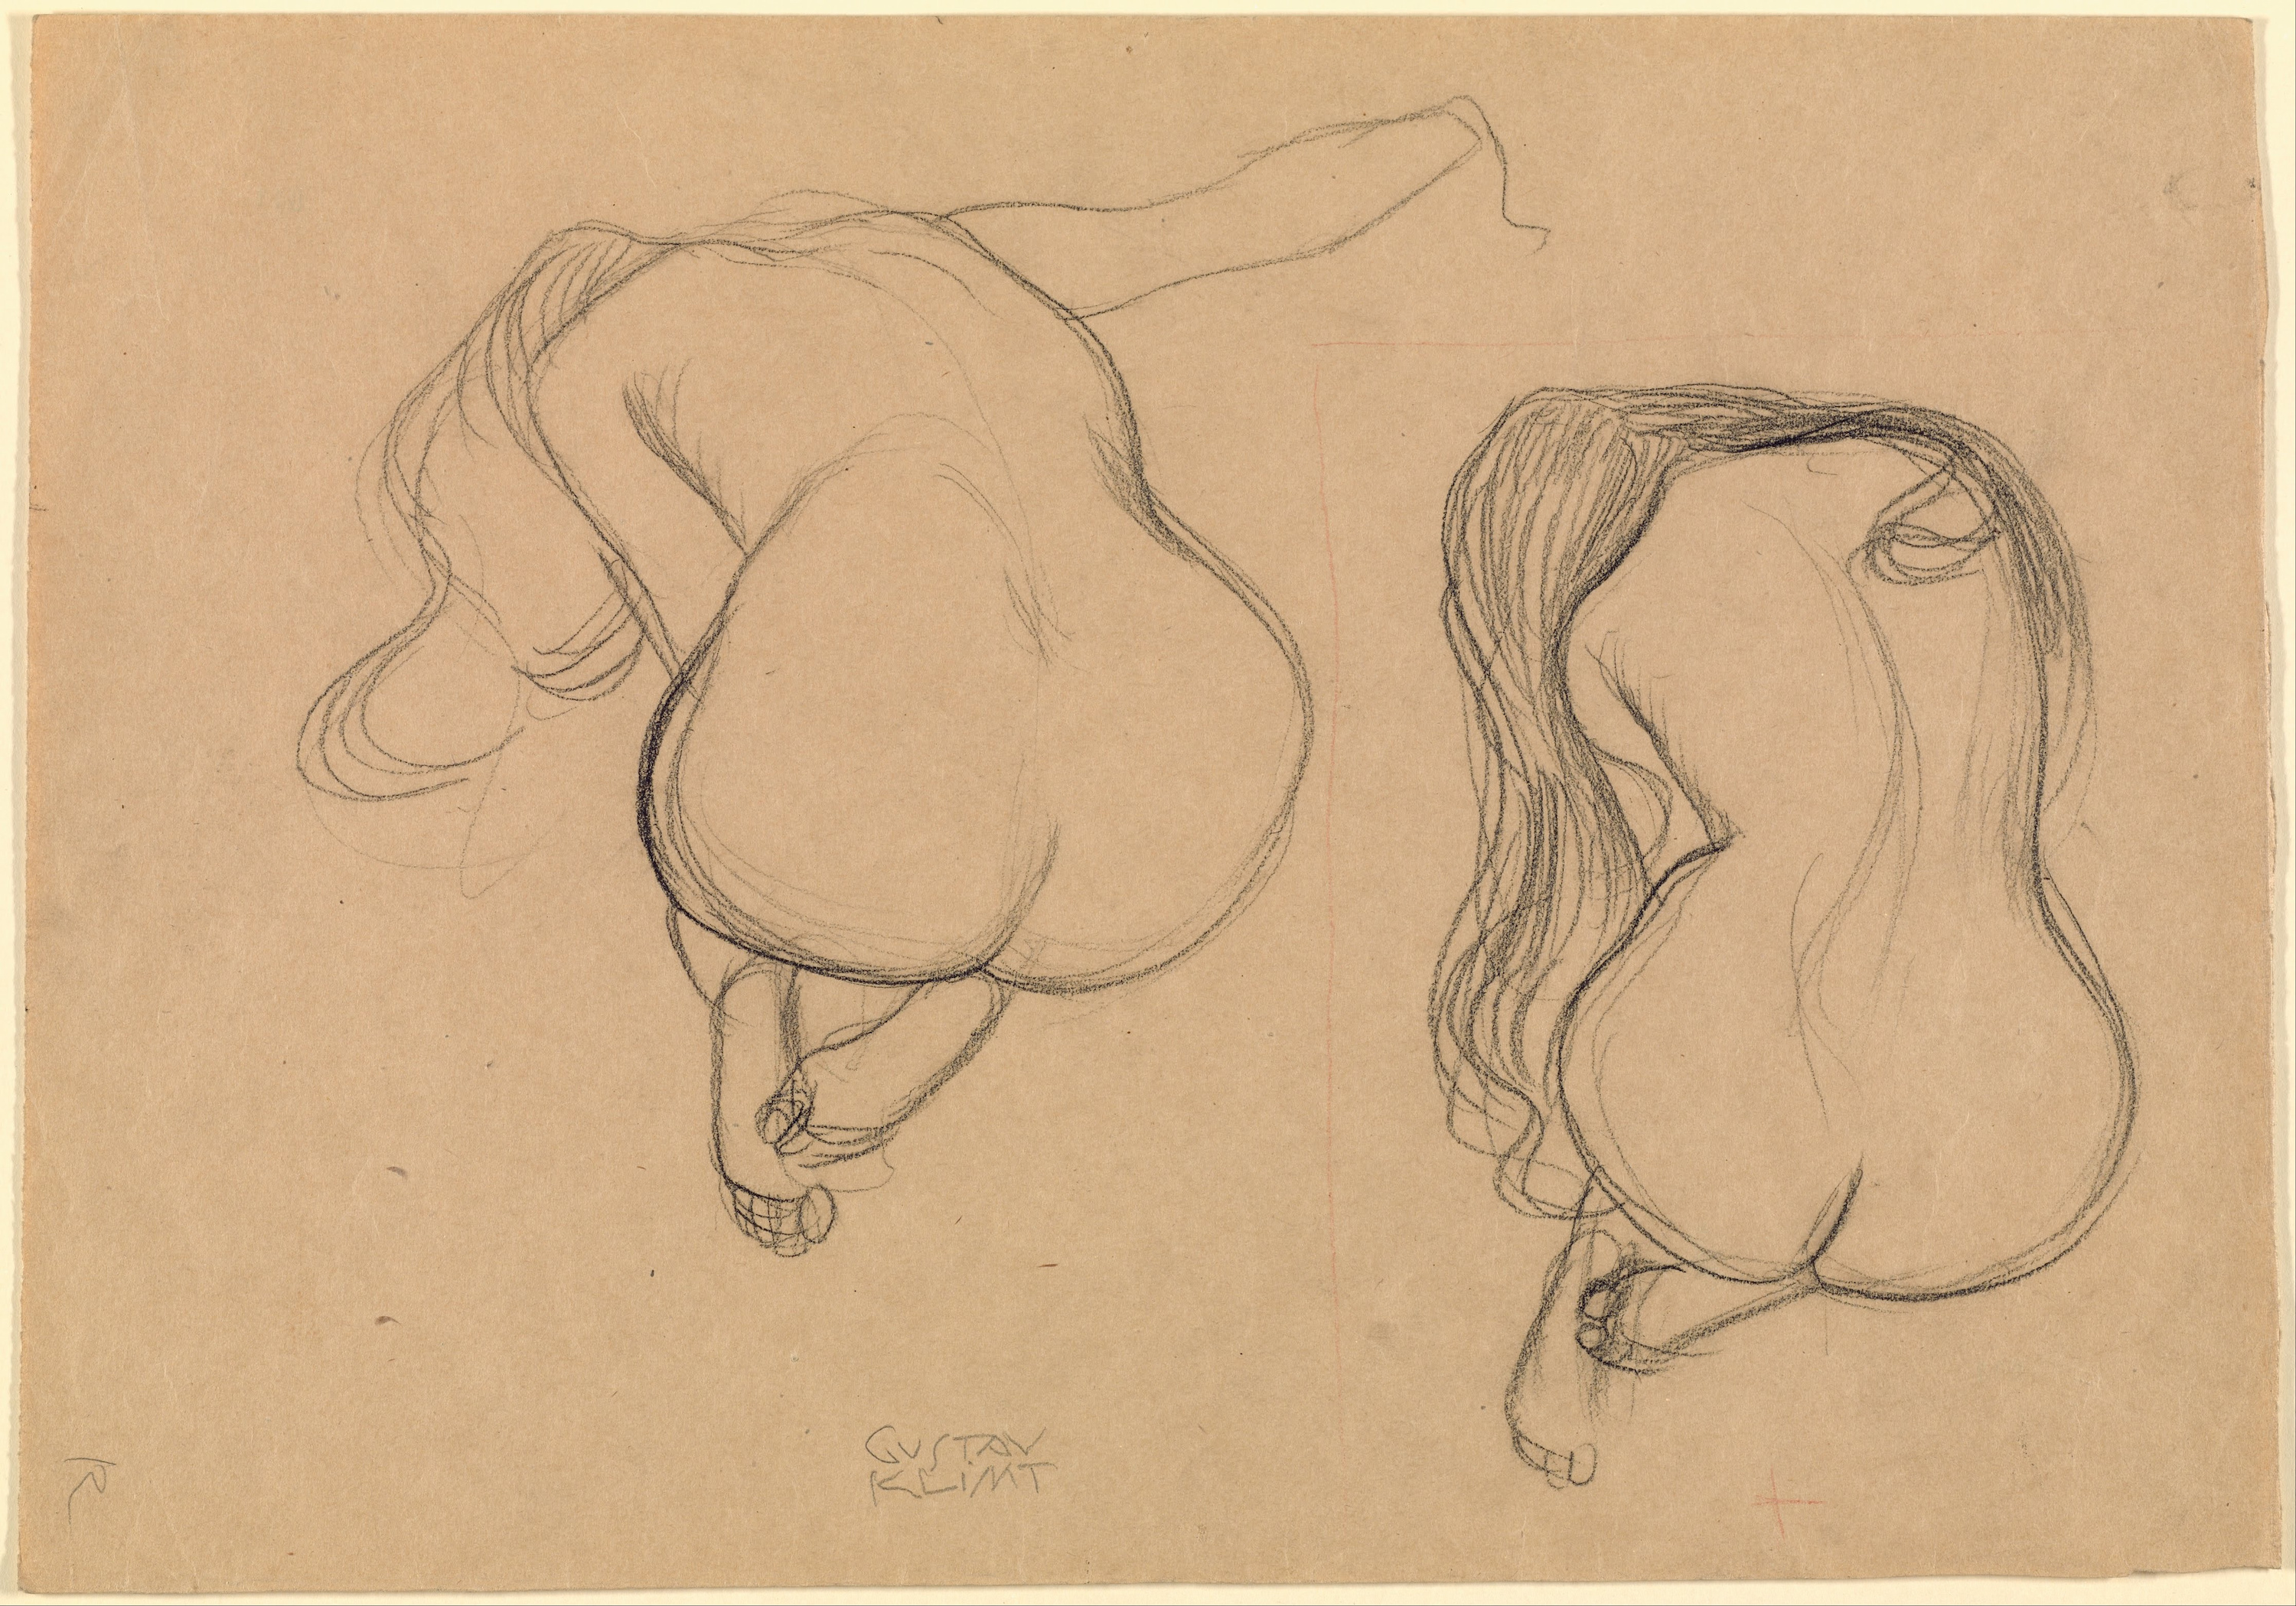 Twee studies van een zittend naakt met lang haar by Gustav Klimt - 1901-02 - 45.2 x 31.7 cm 